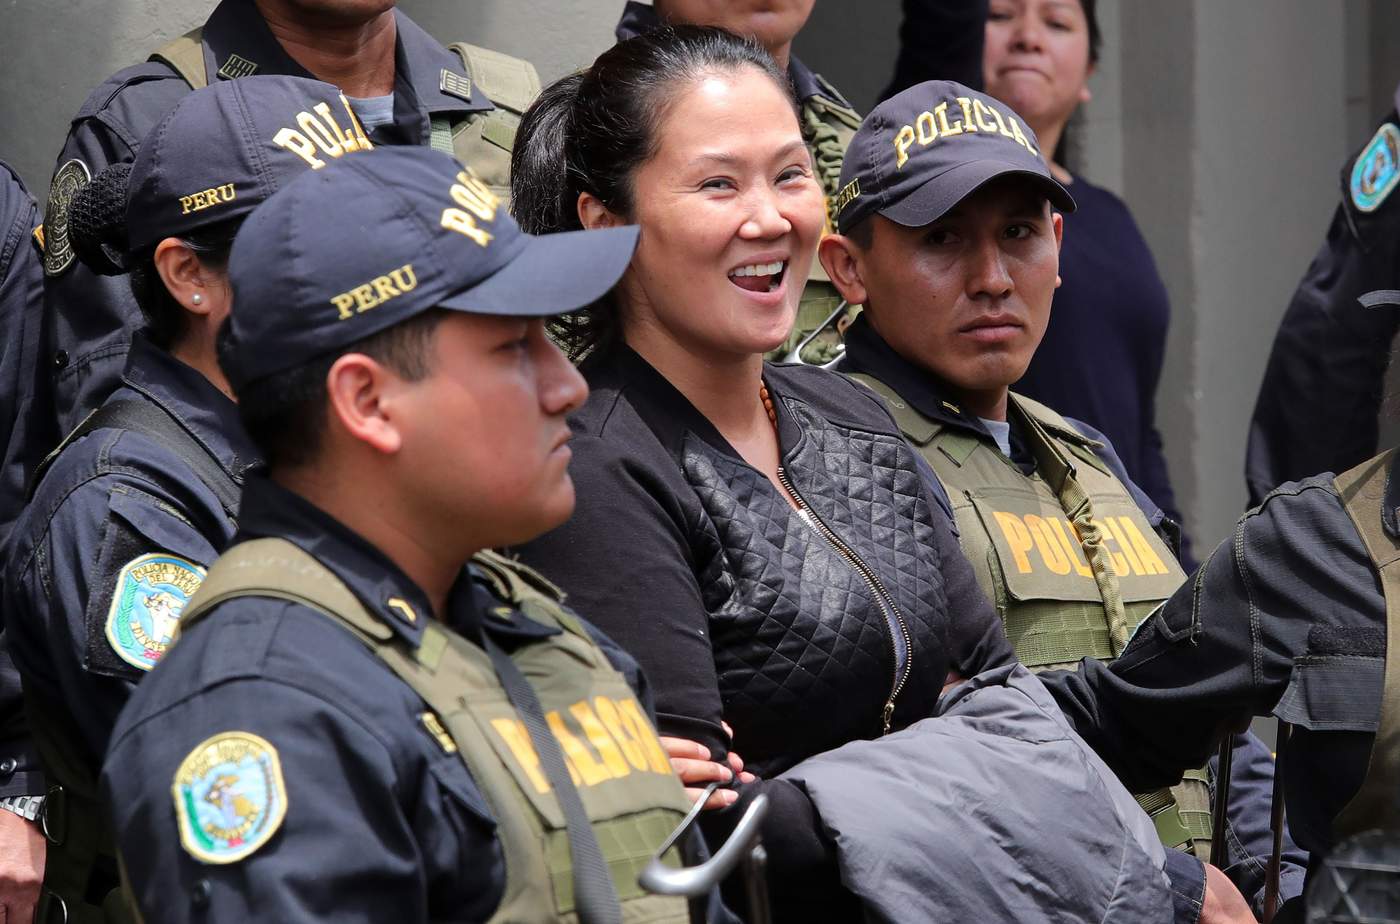 'La prisión es realmente dura, sobre todo por la separación y ausencia de los que más amamos', apuntó en el texto Fujimori, quien permanece en prisión desde noviembre último. (ARCHIVO)